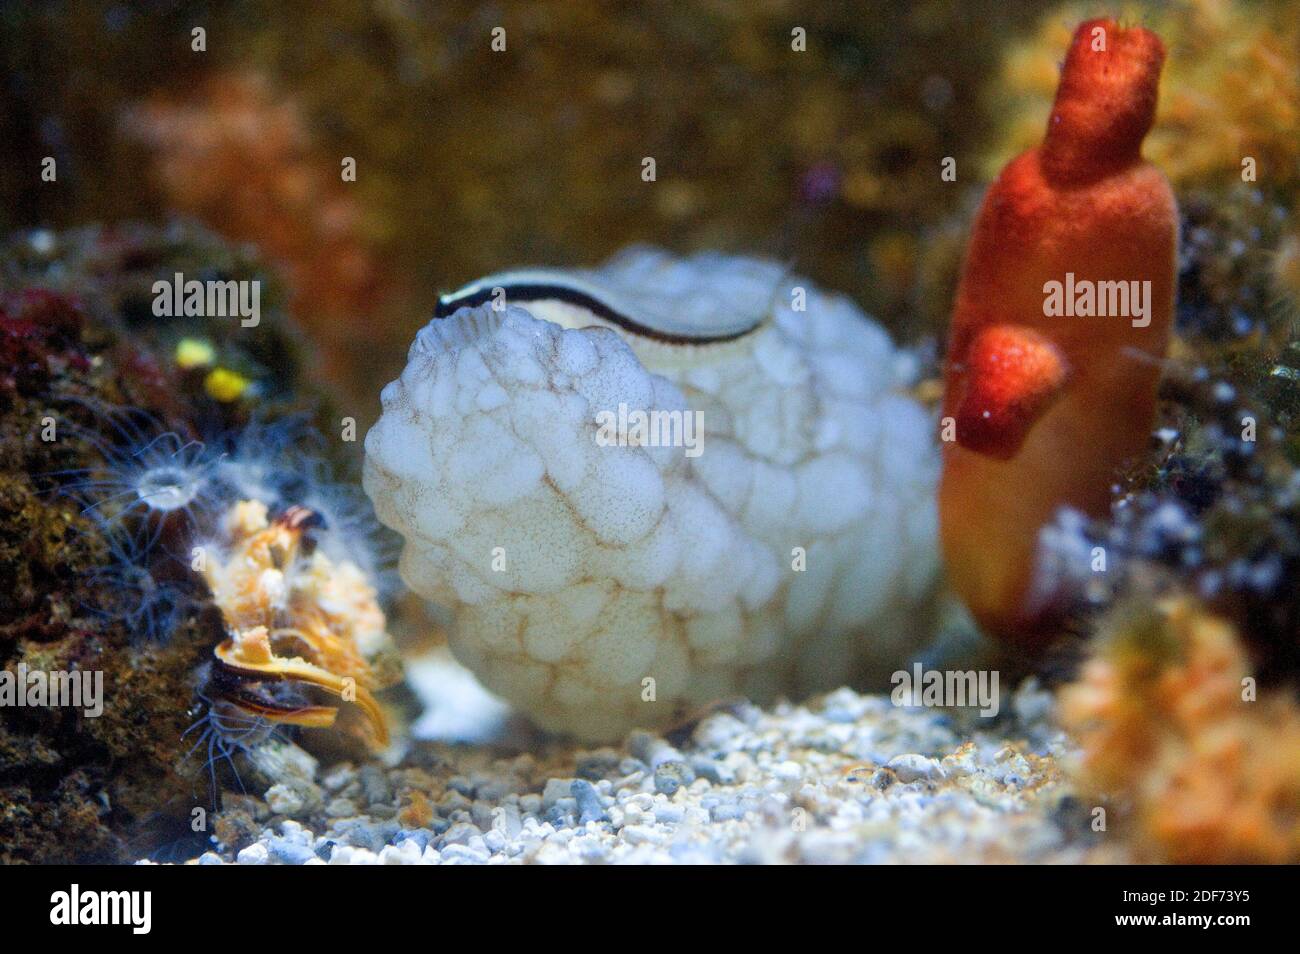 Lo squirt di mare bianco (Phallusia mammillata) è un filtro di Ascidiacea nativo del Mar Mediterraneo e dell'Oceano Atlantico nordorientale. A destra un altro Foto Stock